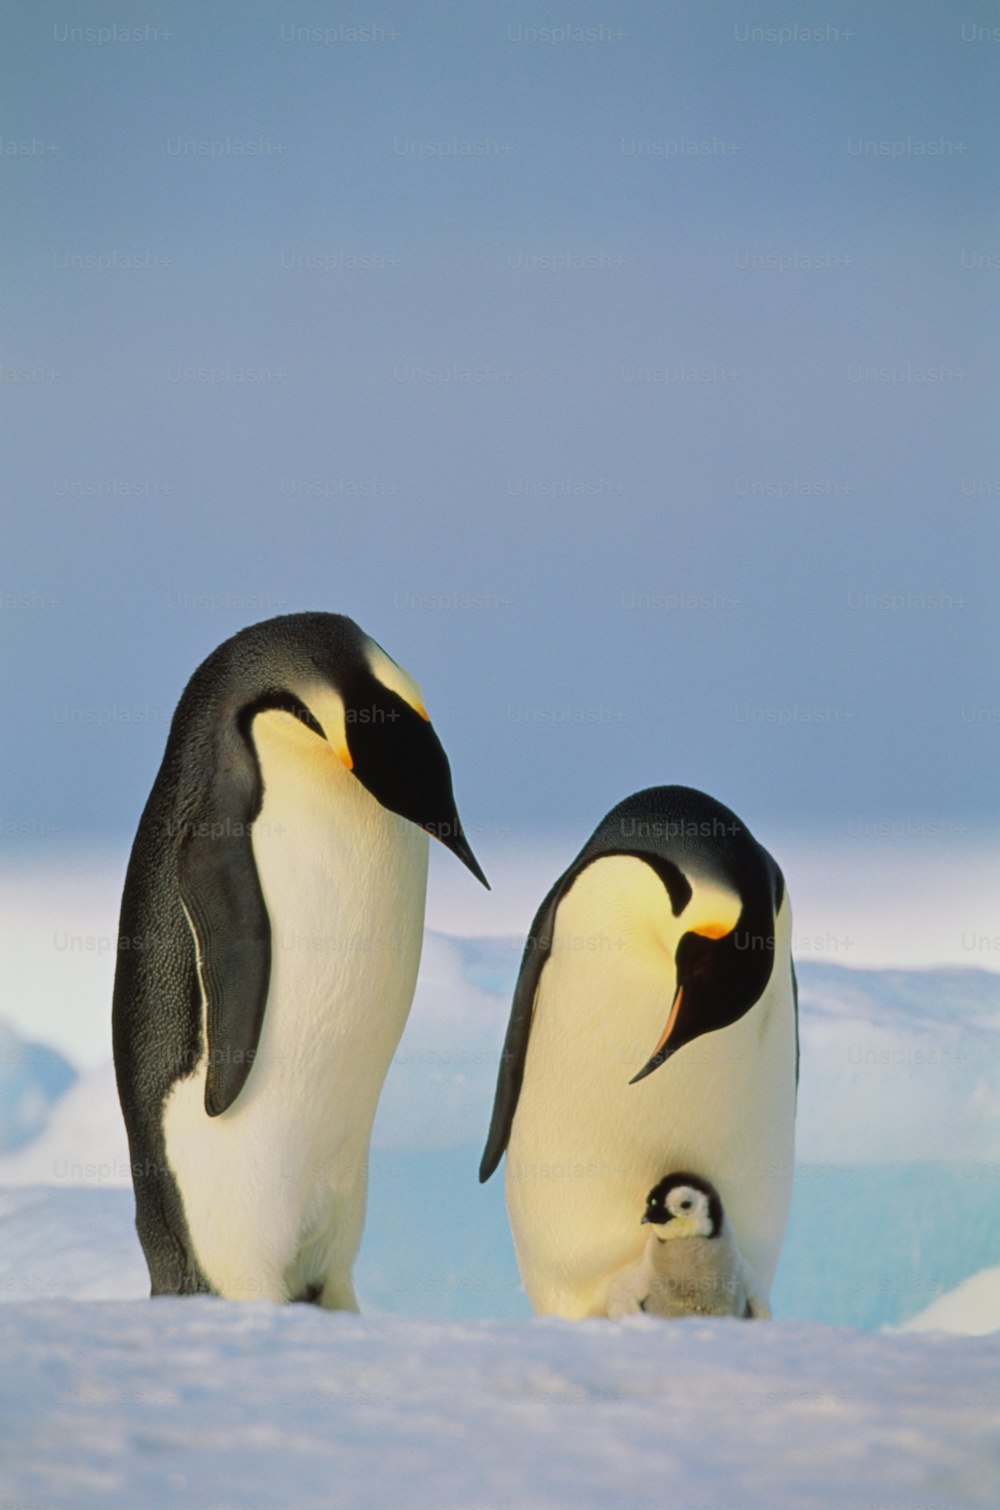 Les manchots empereurs sont la plus grande espèce de manchots. Comme tous les pingouins, ils ne peuvent pas voler mais sont de bons nageurs. Les manchots empereurs vivent sur la glace de l’Antarctique.